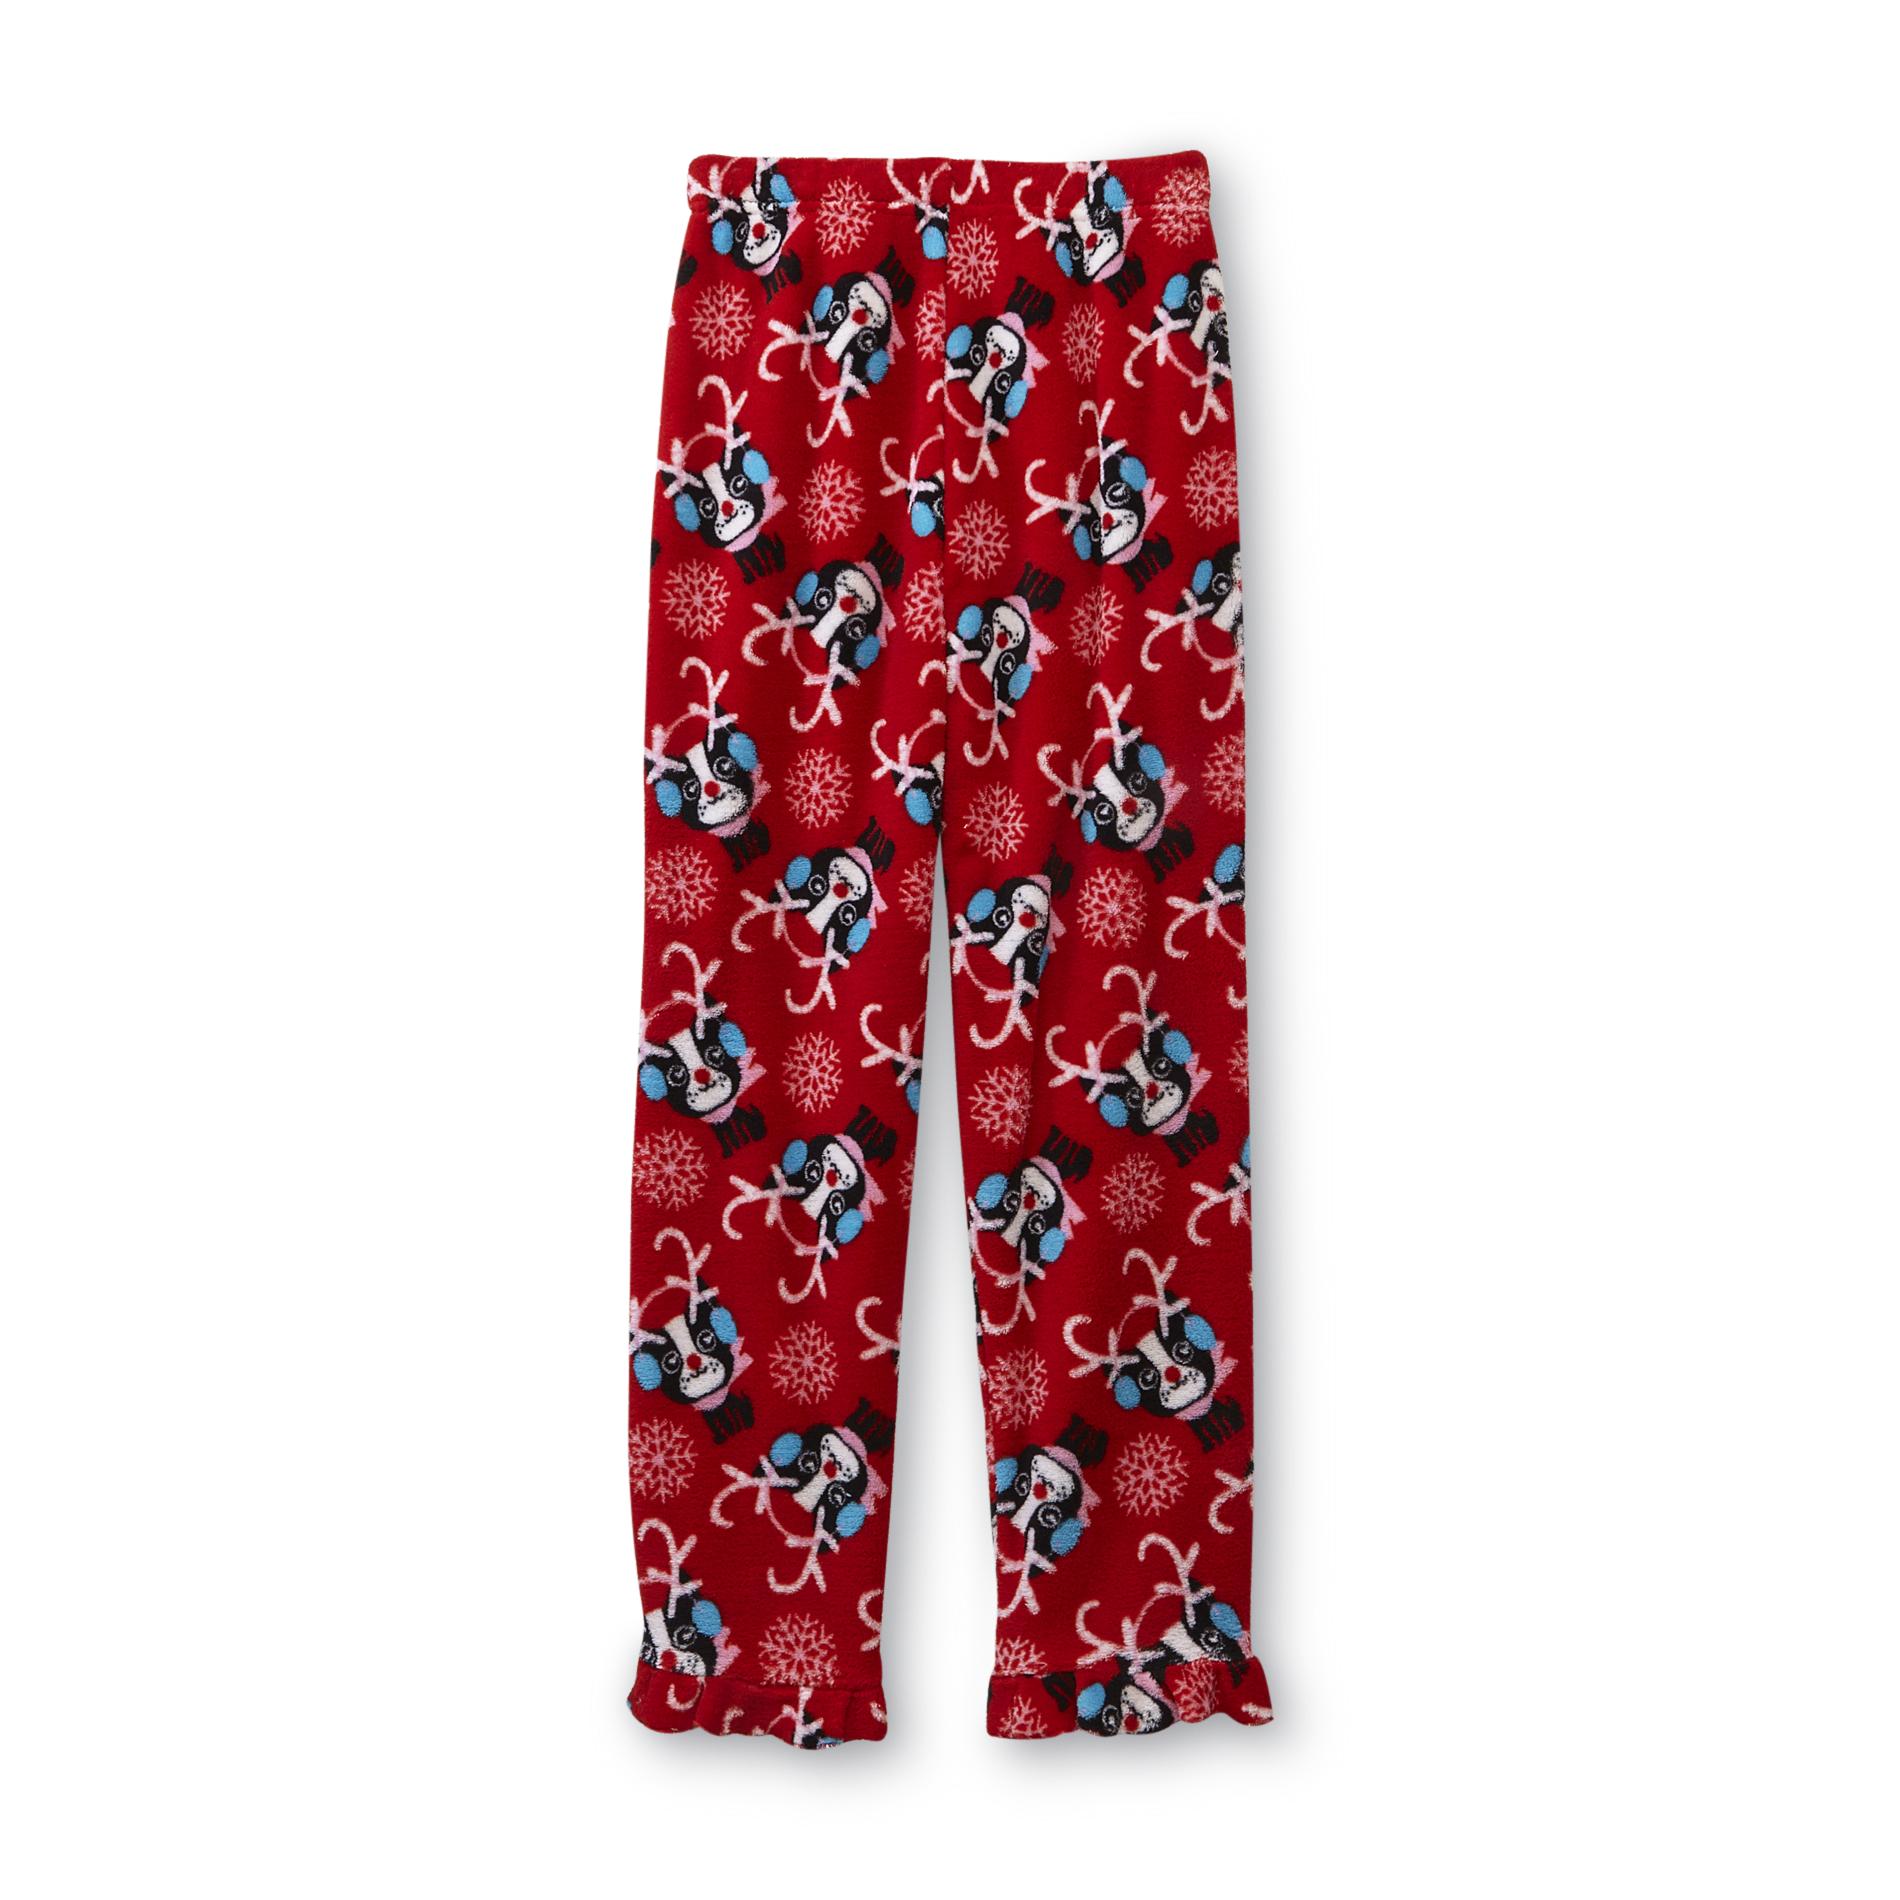 Joe Boxer Girl's Plush Pajama Pants - Dog Print